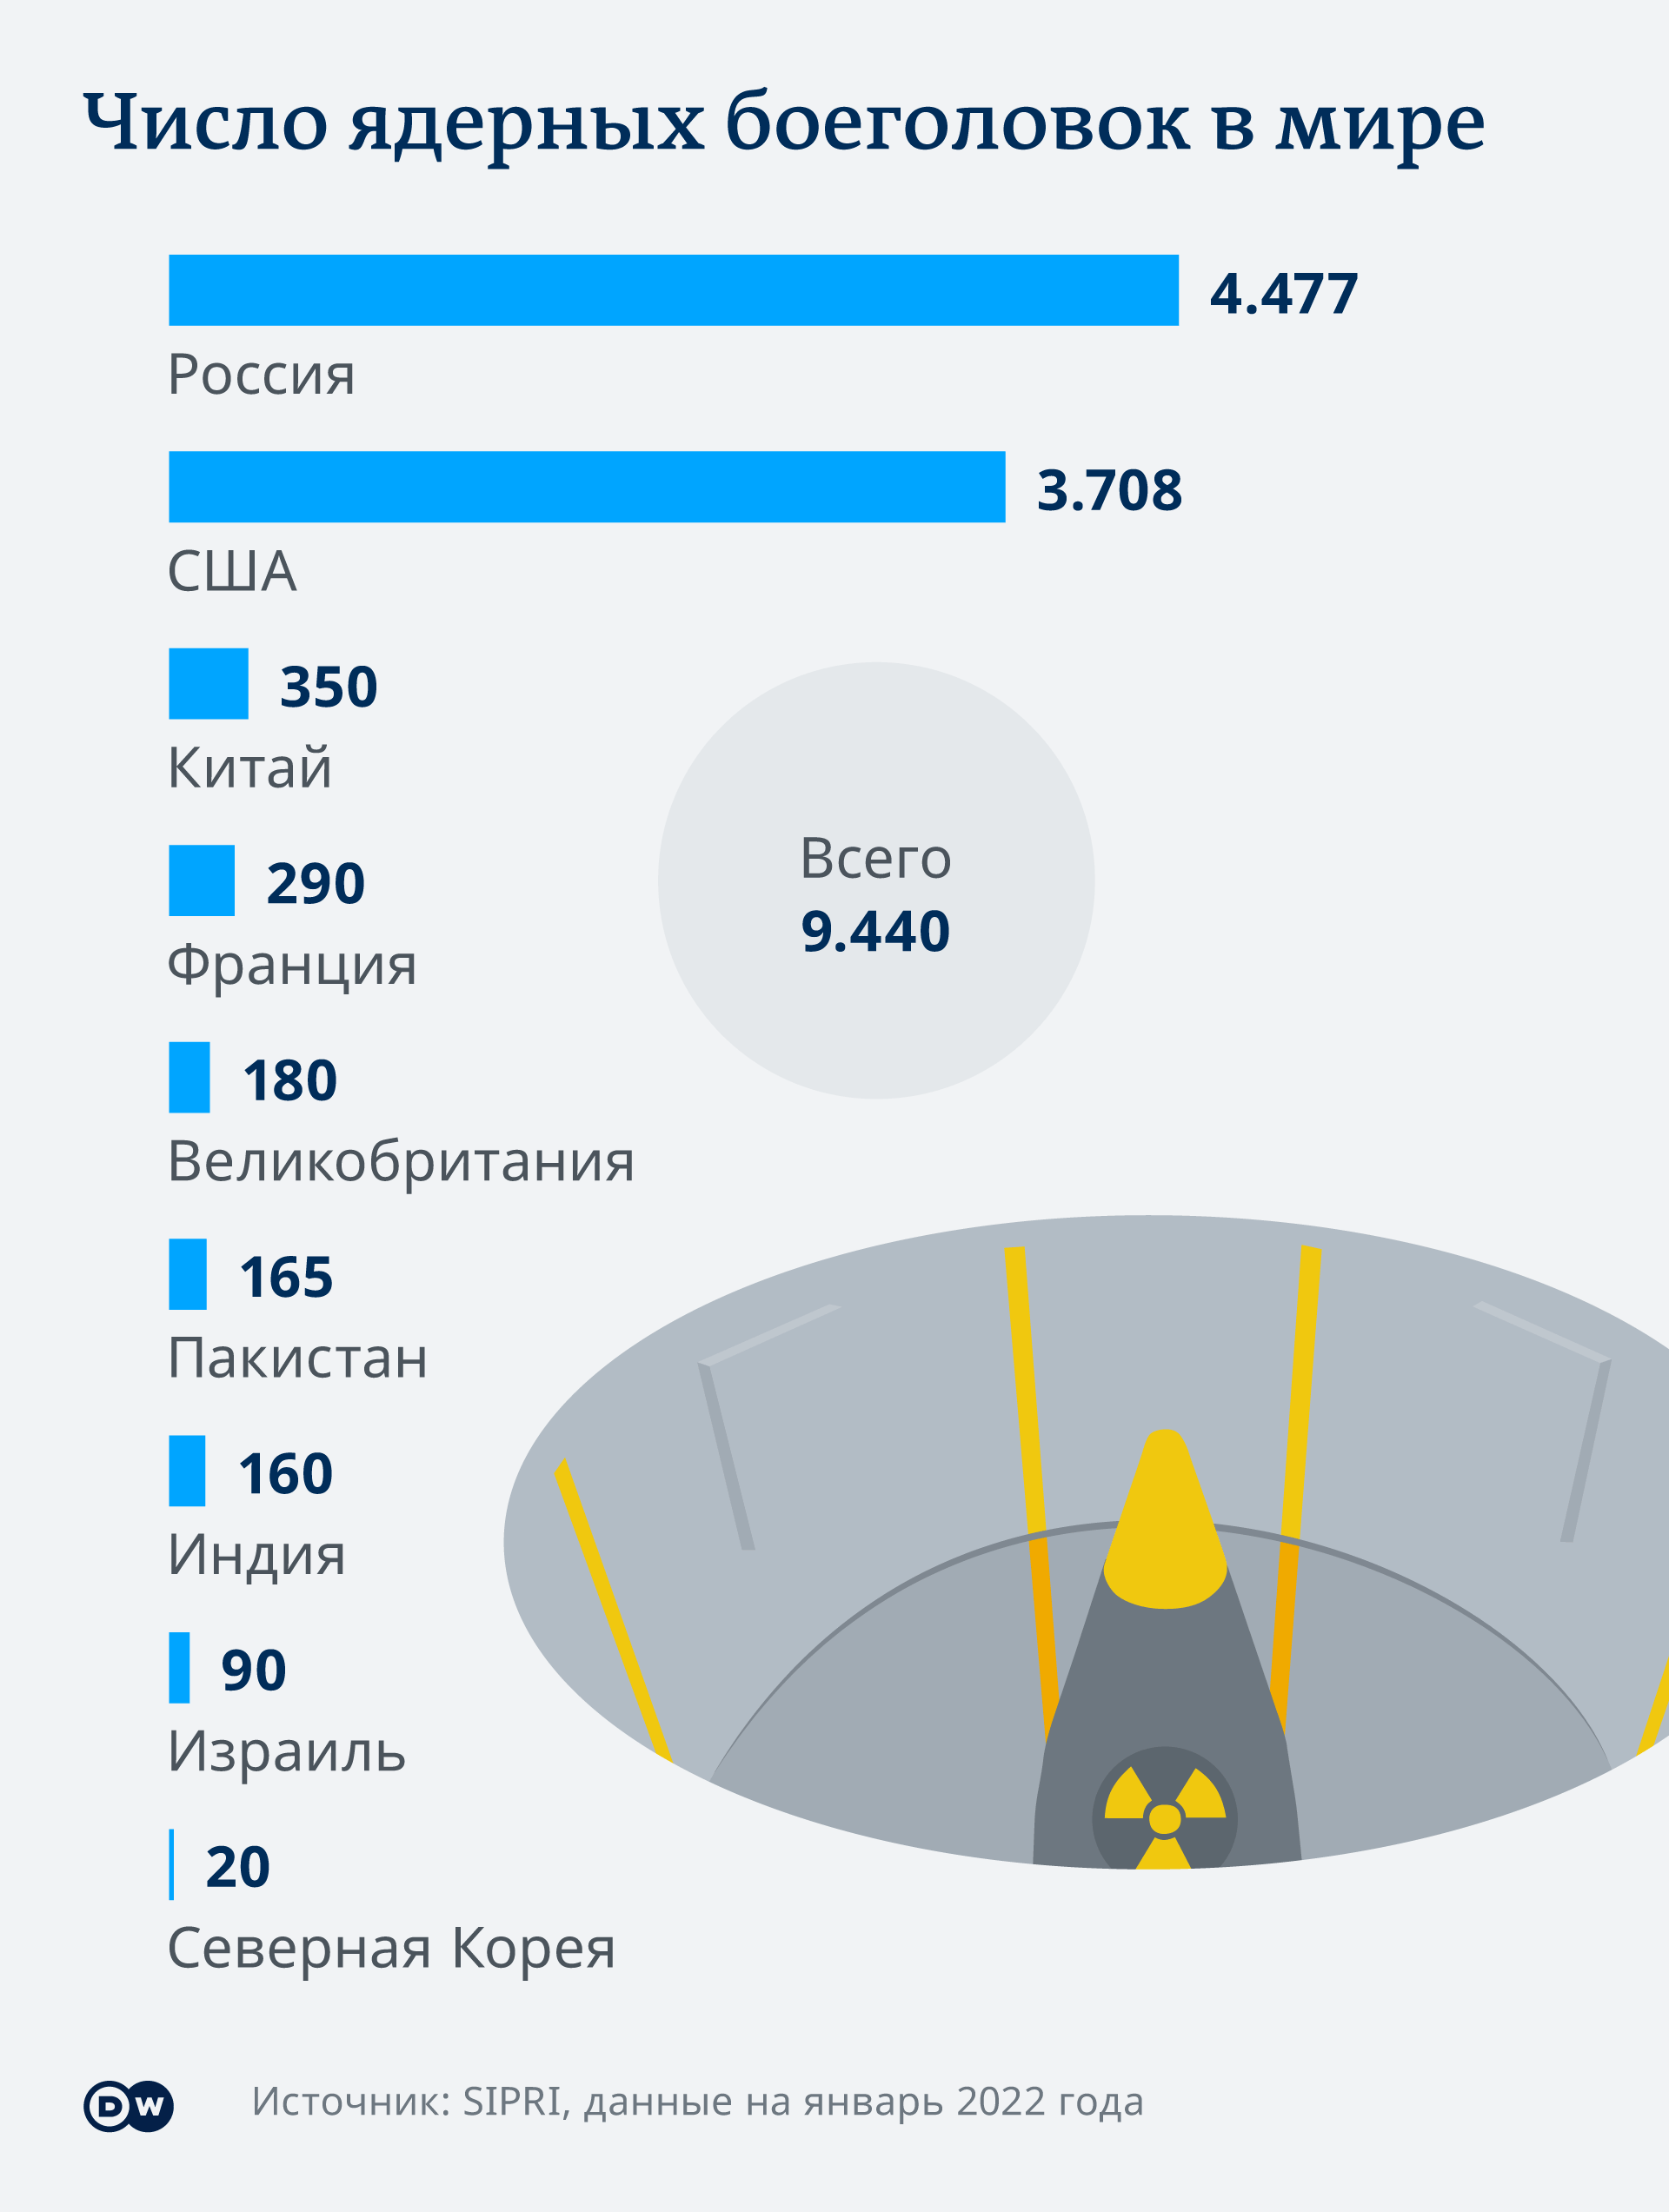 Инфографика Числ ядерных боеголовок в мире